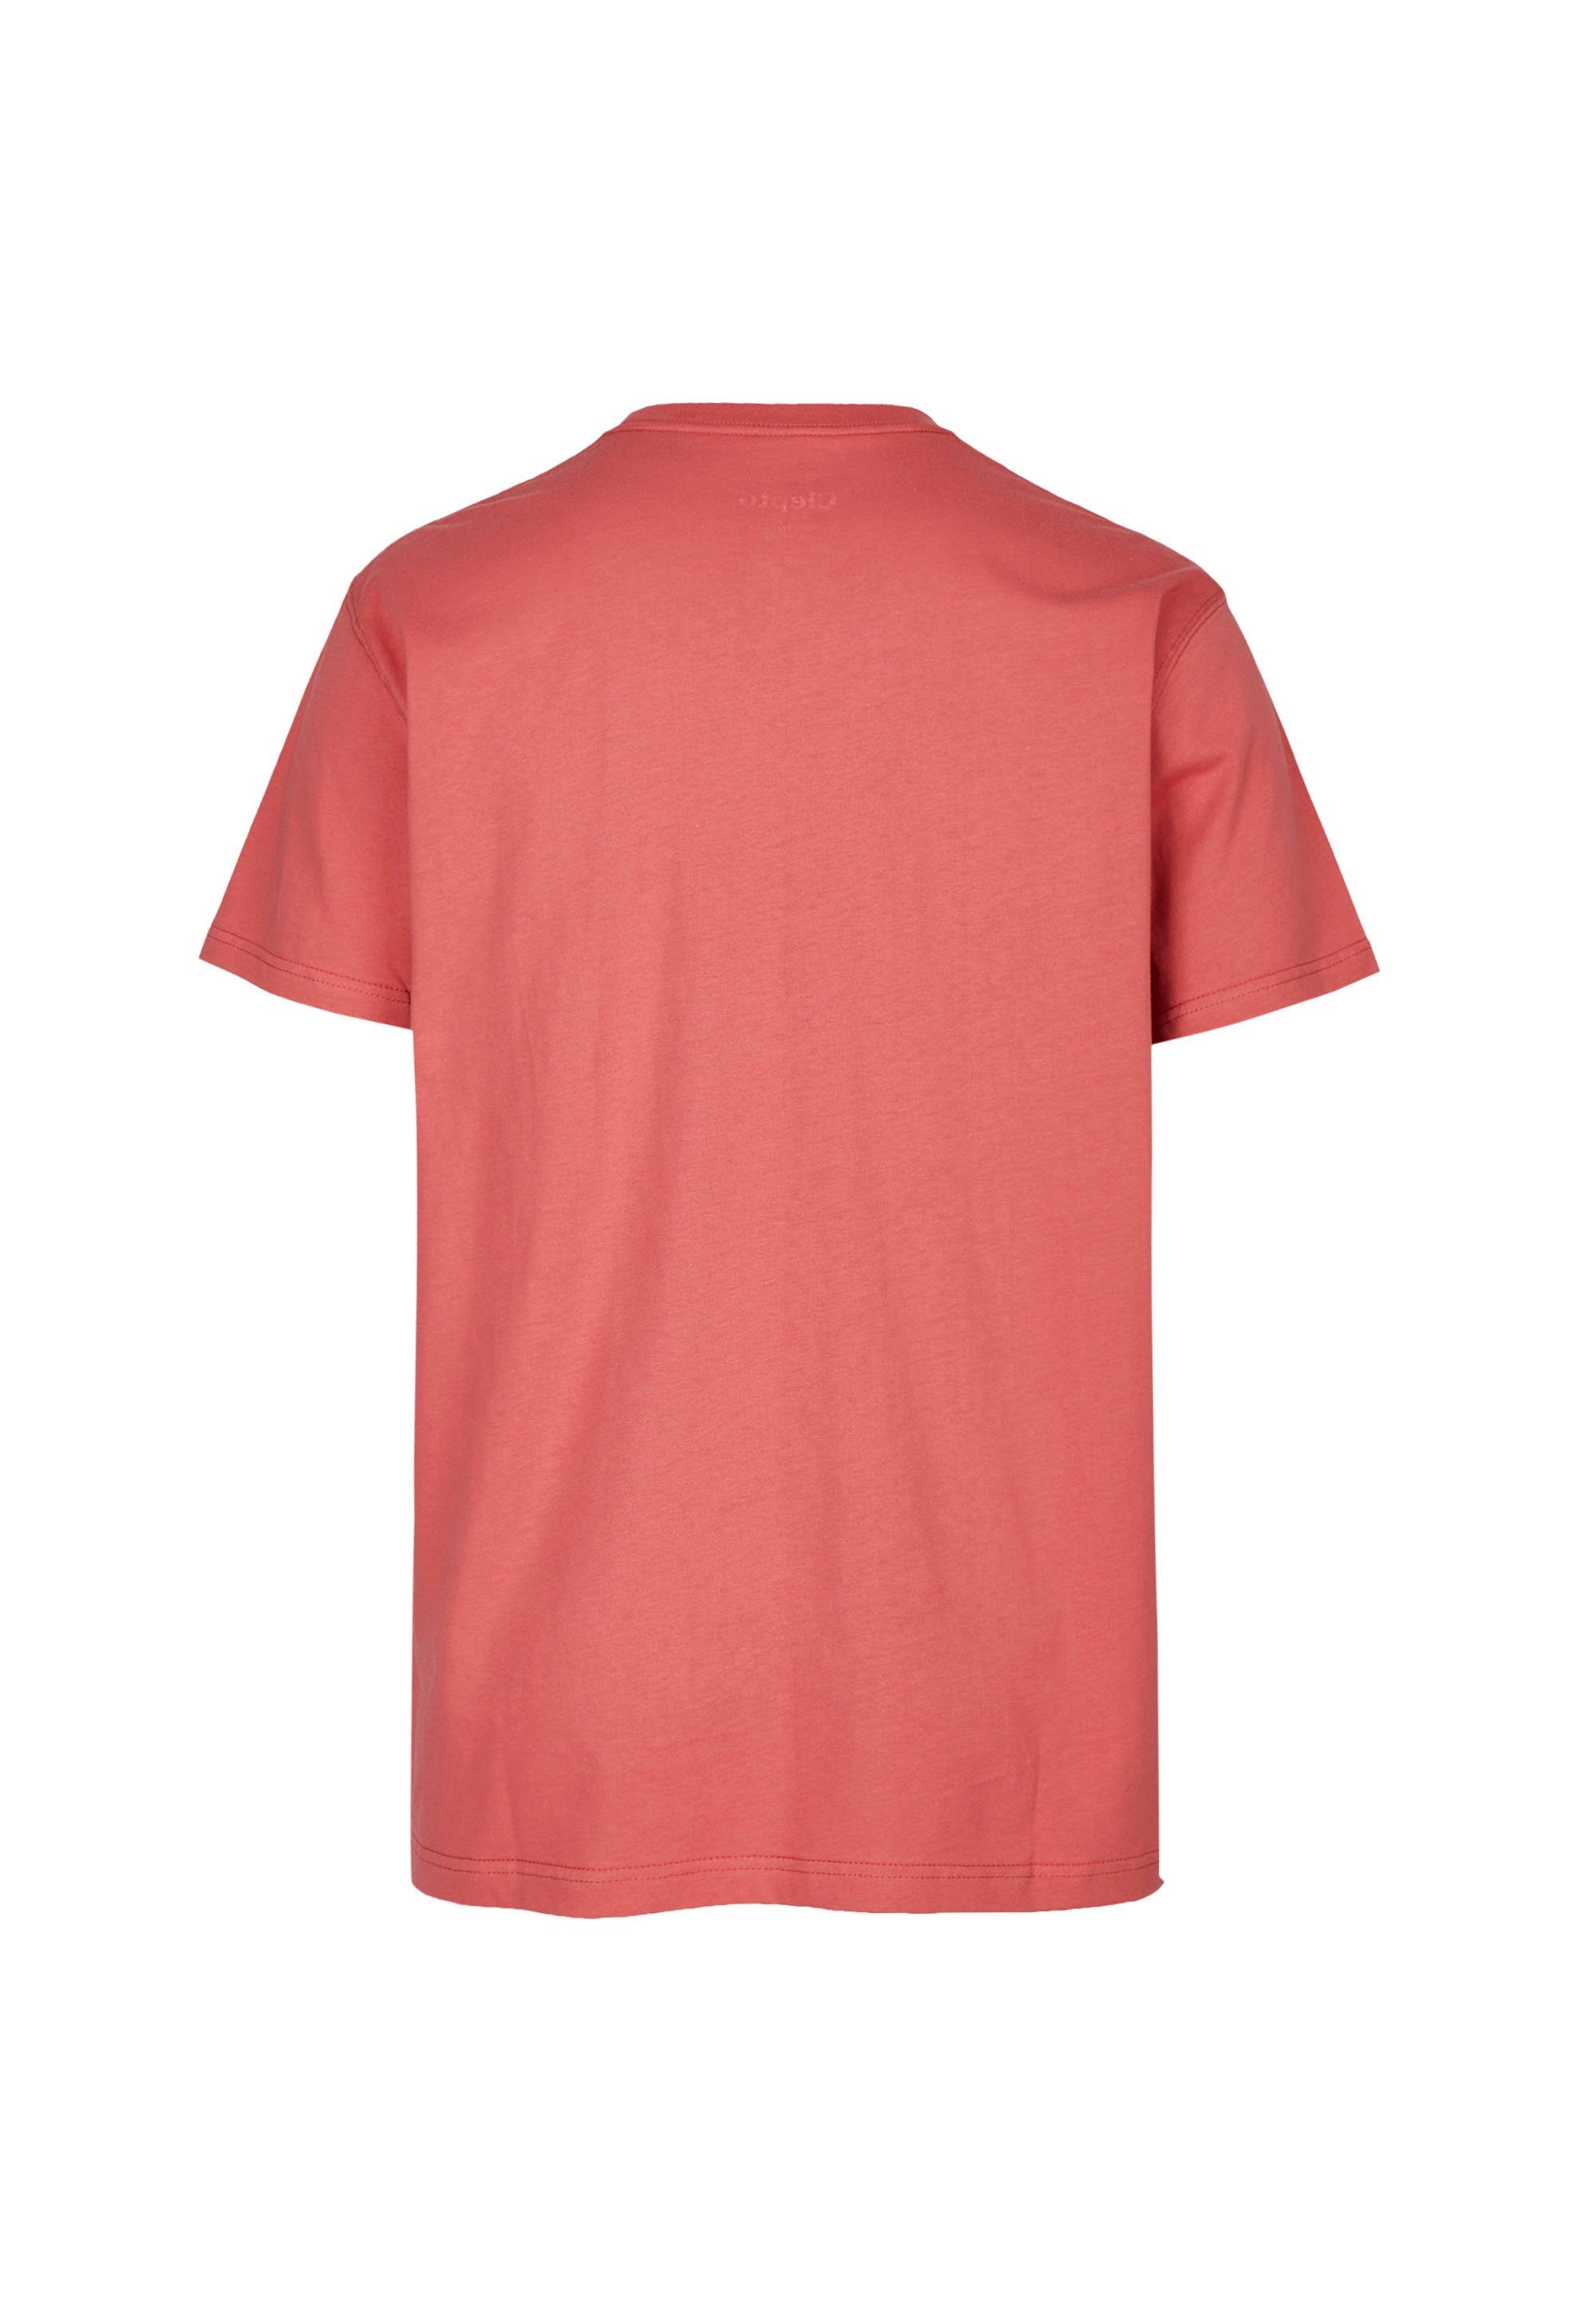 modischem Cleptomanicx T-Shirt on mit Frontprint Keep rot